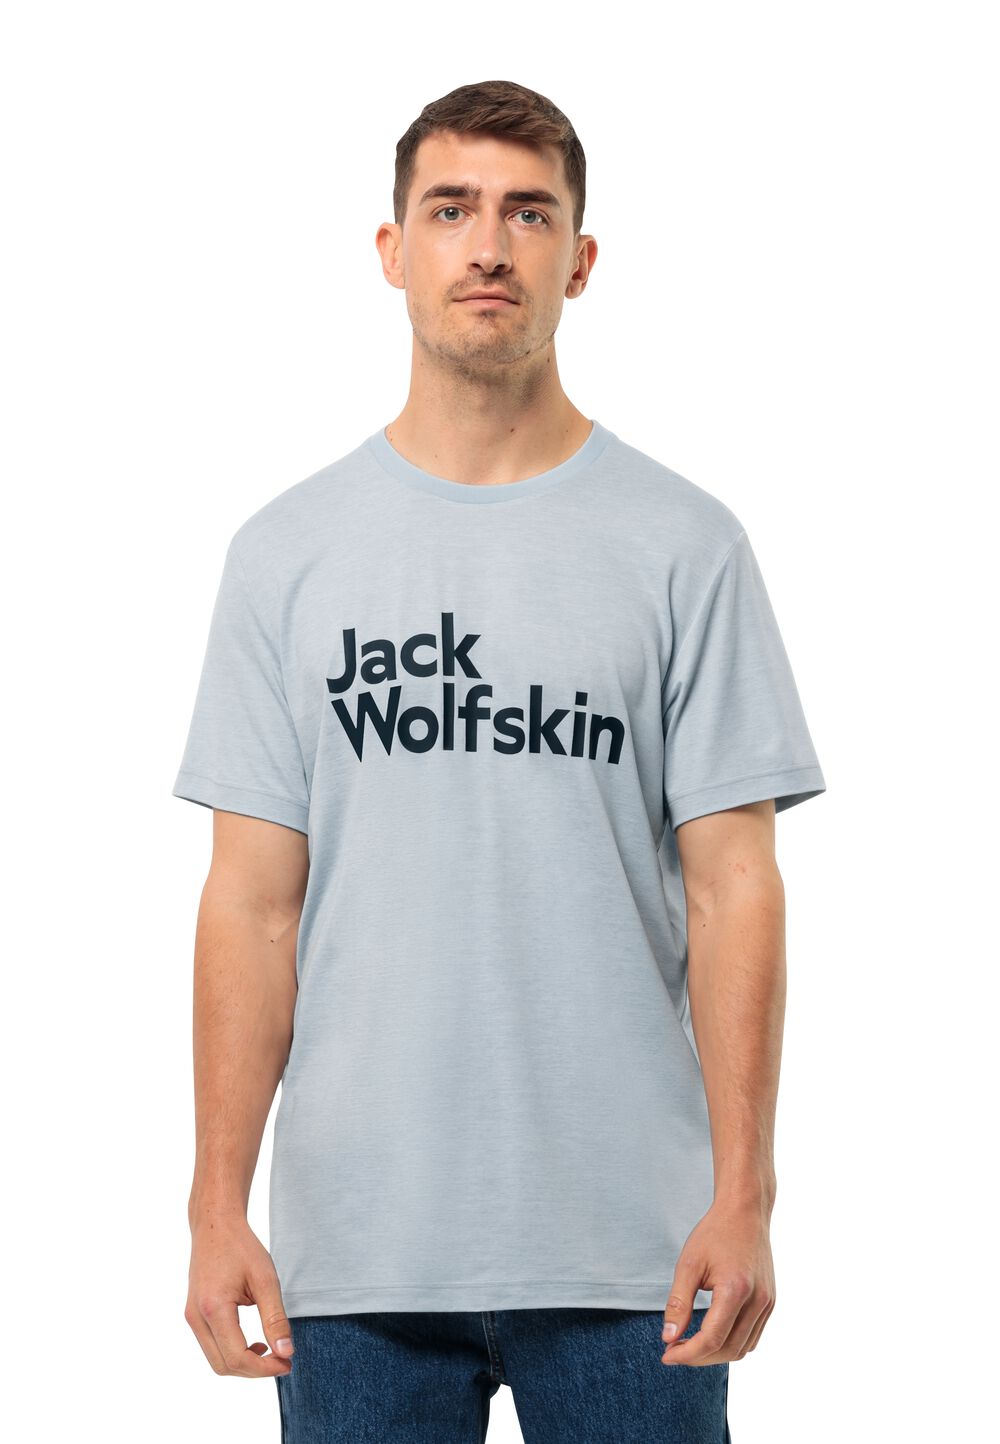 Jack Wolfskin Brand T-Shirt Men Functioneel shirt Heren L soft blue soft blue